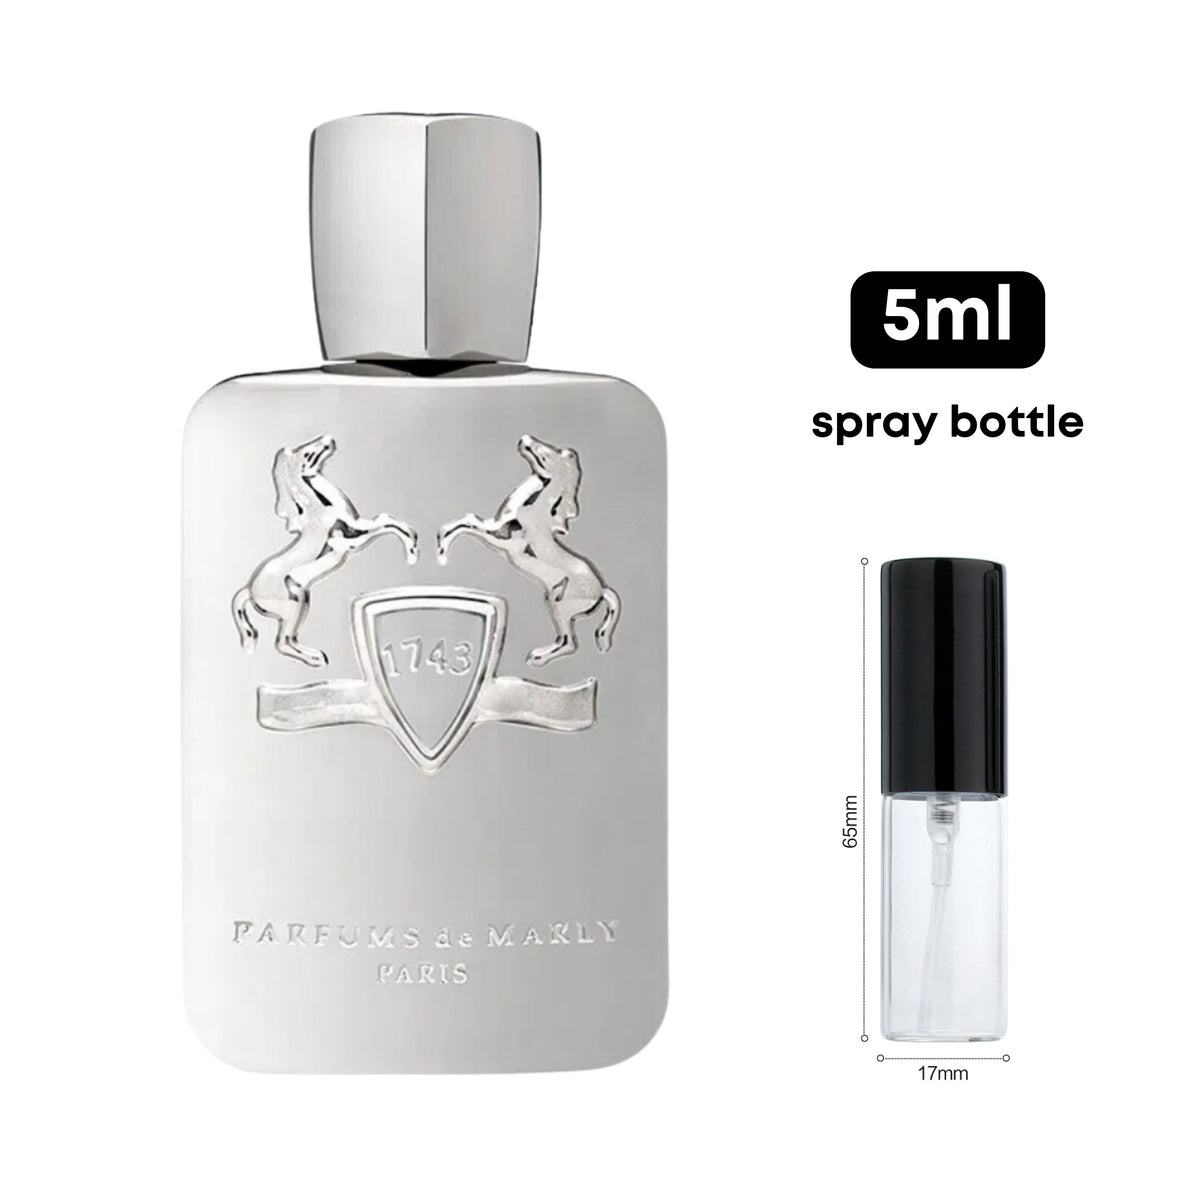 Parfums De Marly Pegasus